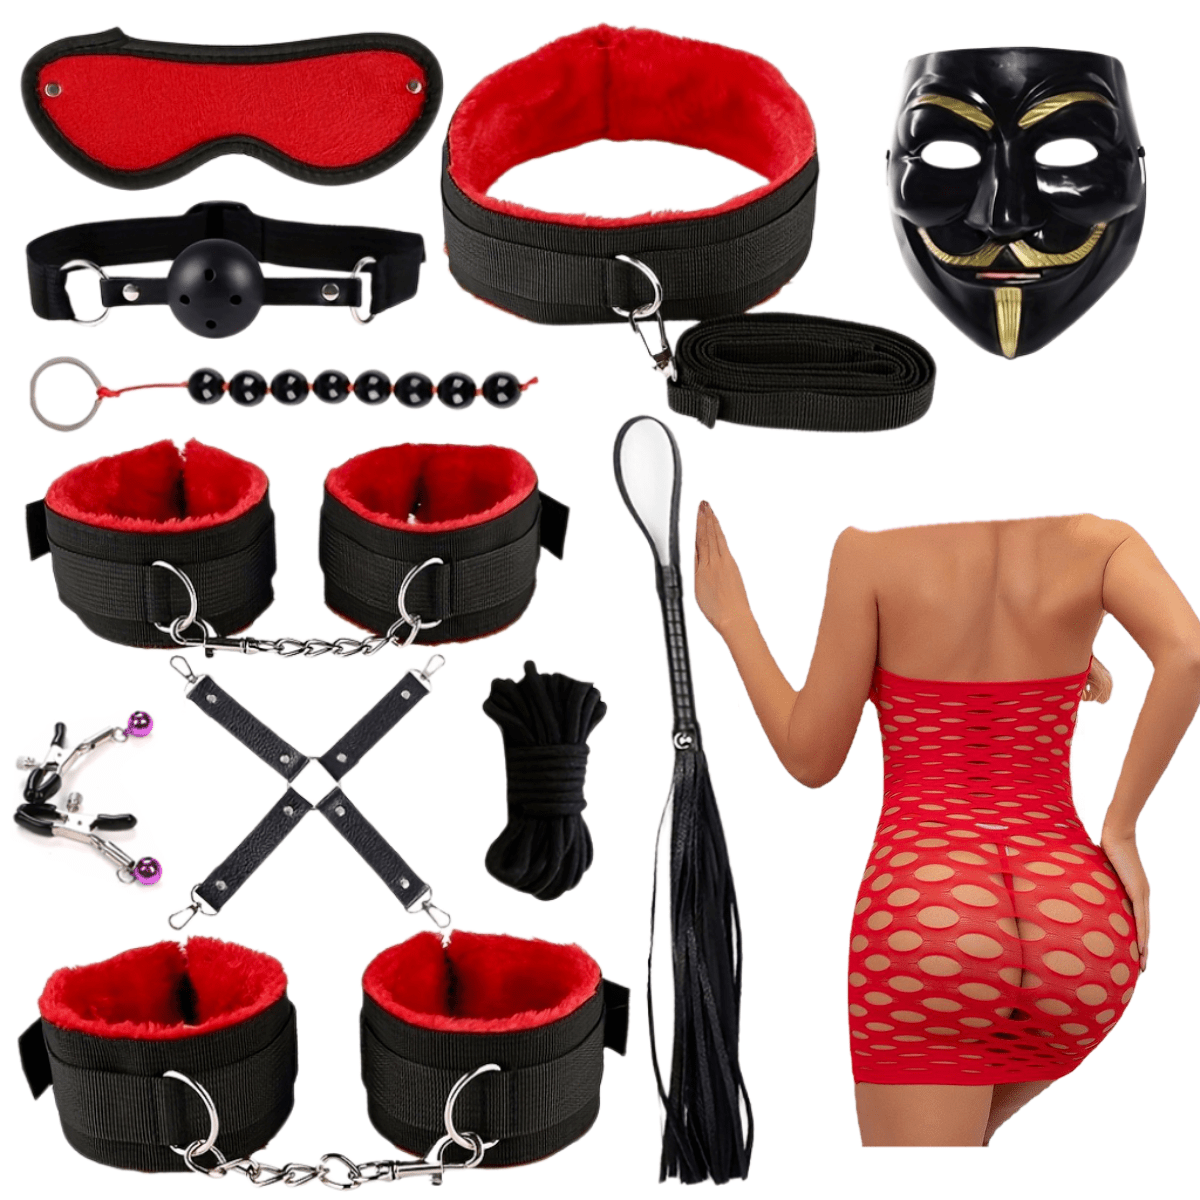  Kit de esclavitud sexual BDSM, sexy esclava ajustable de cuero  para manos y tobillos, gargantilla con correa para parejas, herramienta de juegos  sexuales SM para cosplay, juguetes sexuales para : Salud